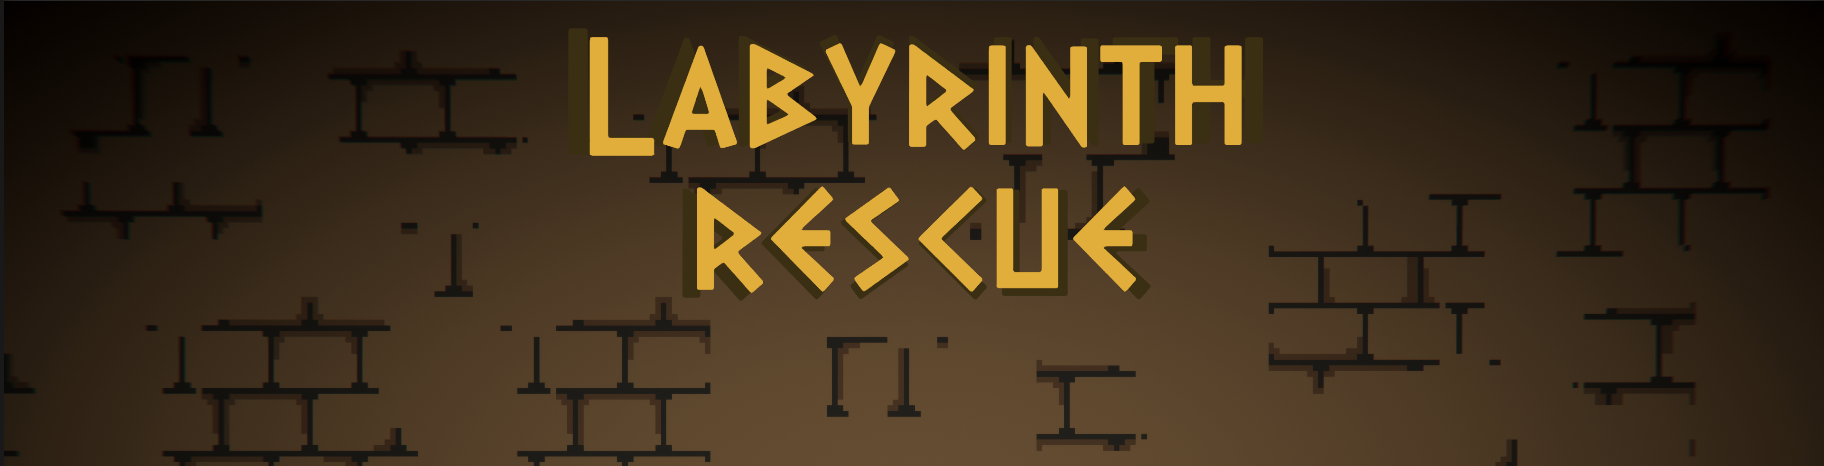 Laberynth Rescue